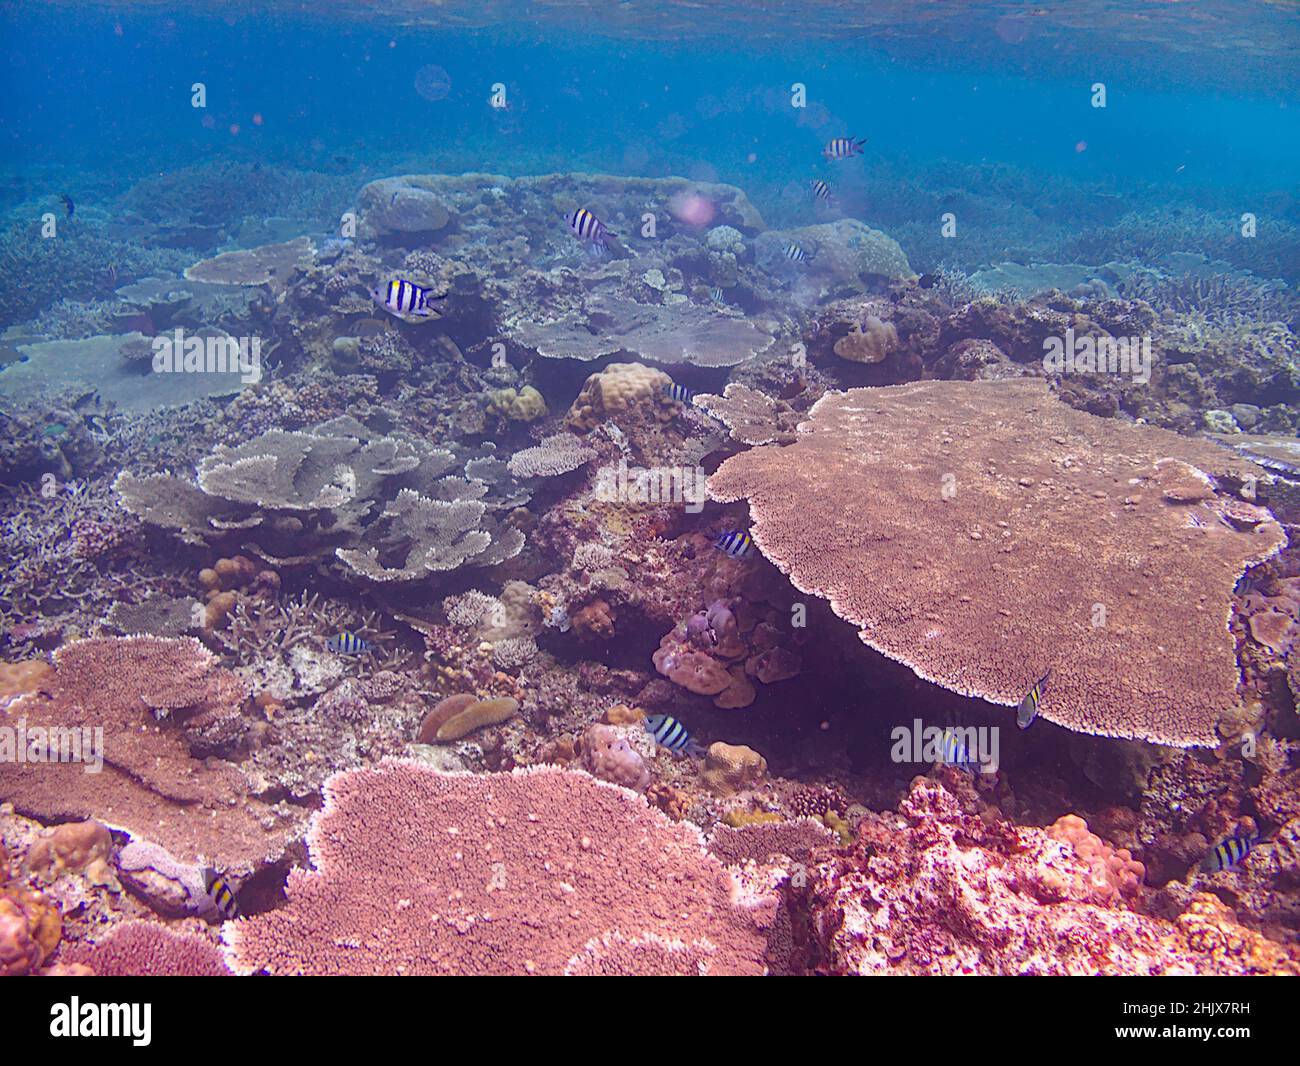 Tischkorallen im Meer Stockfoto